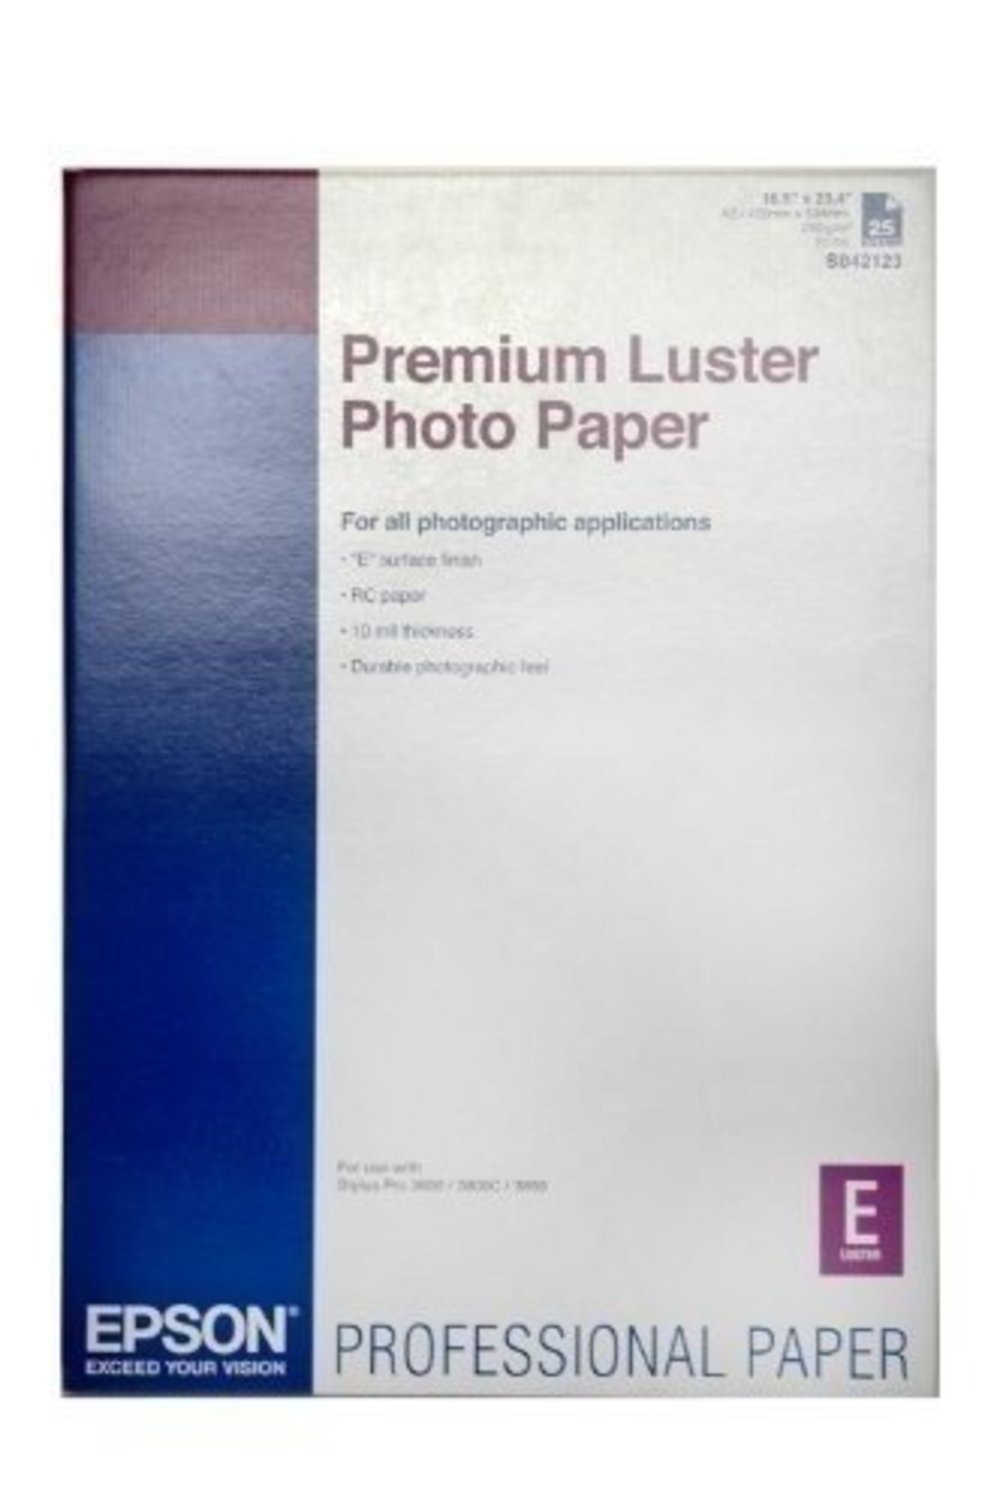 EPSON PREMIUM LUSTER PHOTO PAPER